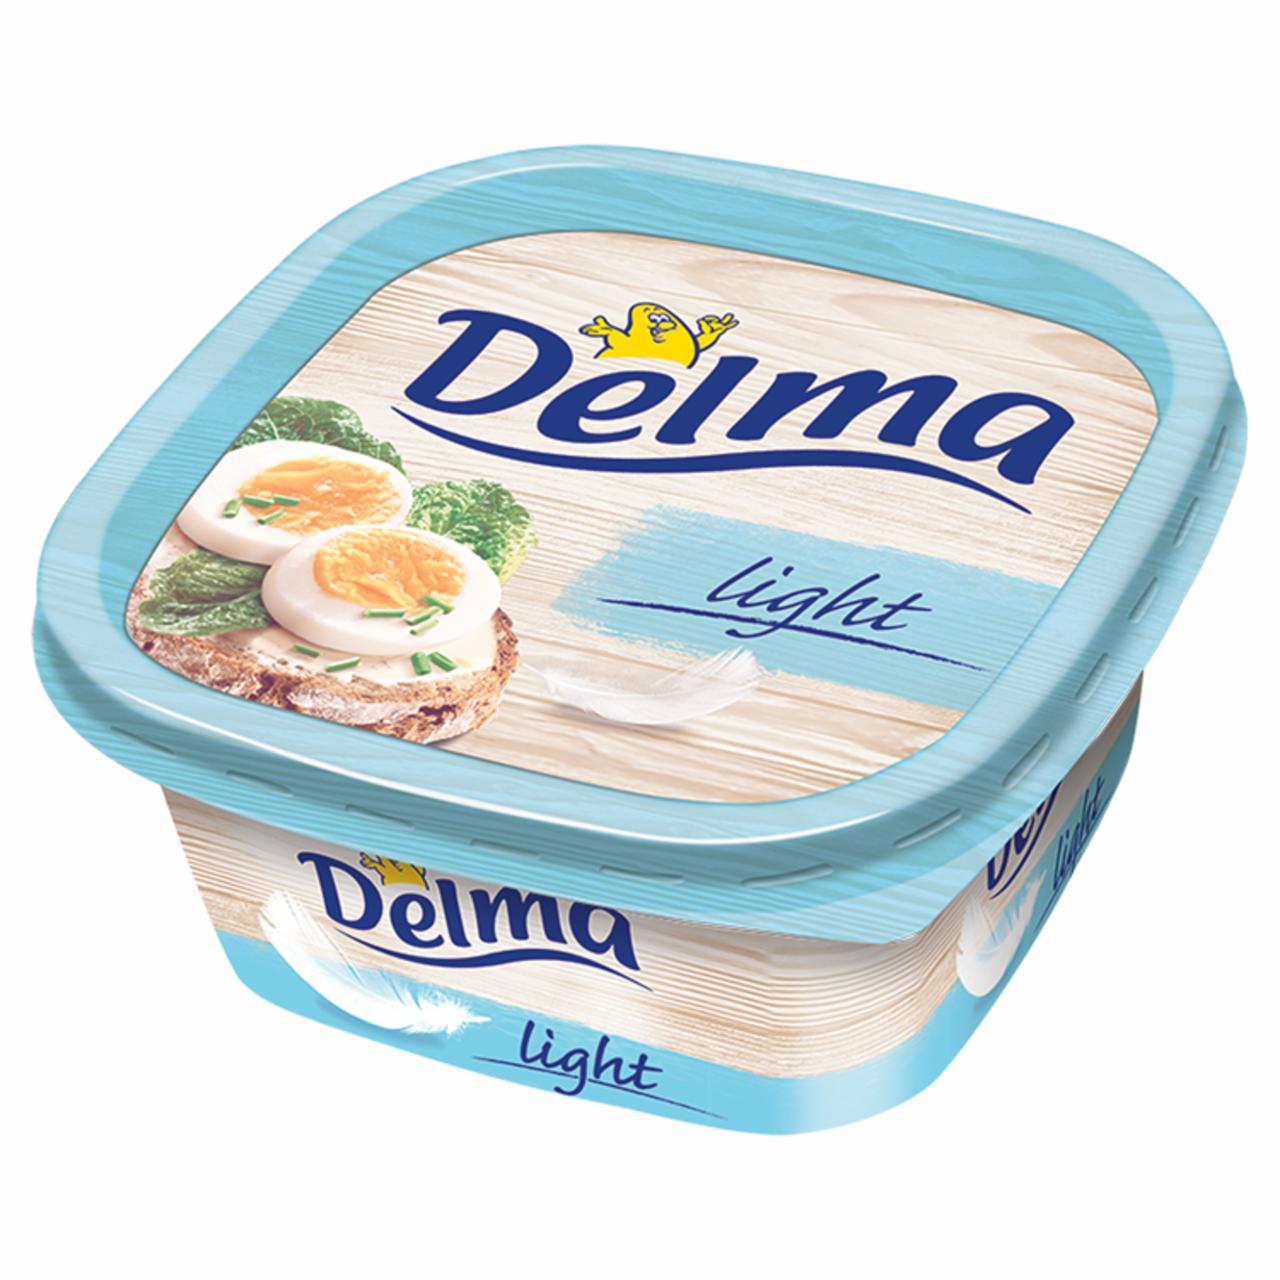 Képek - Delma Light csészés margarin 500 g